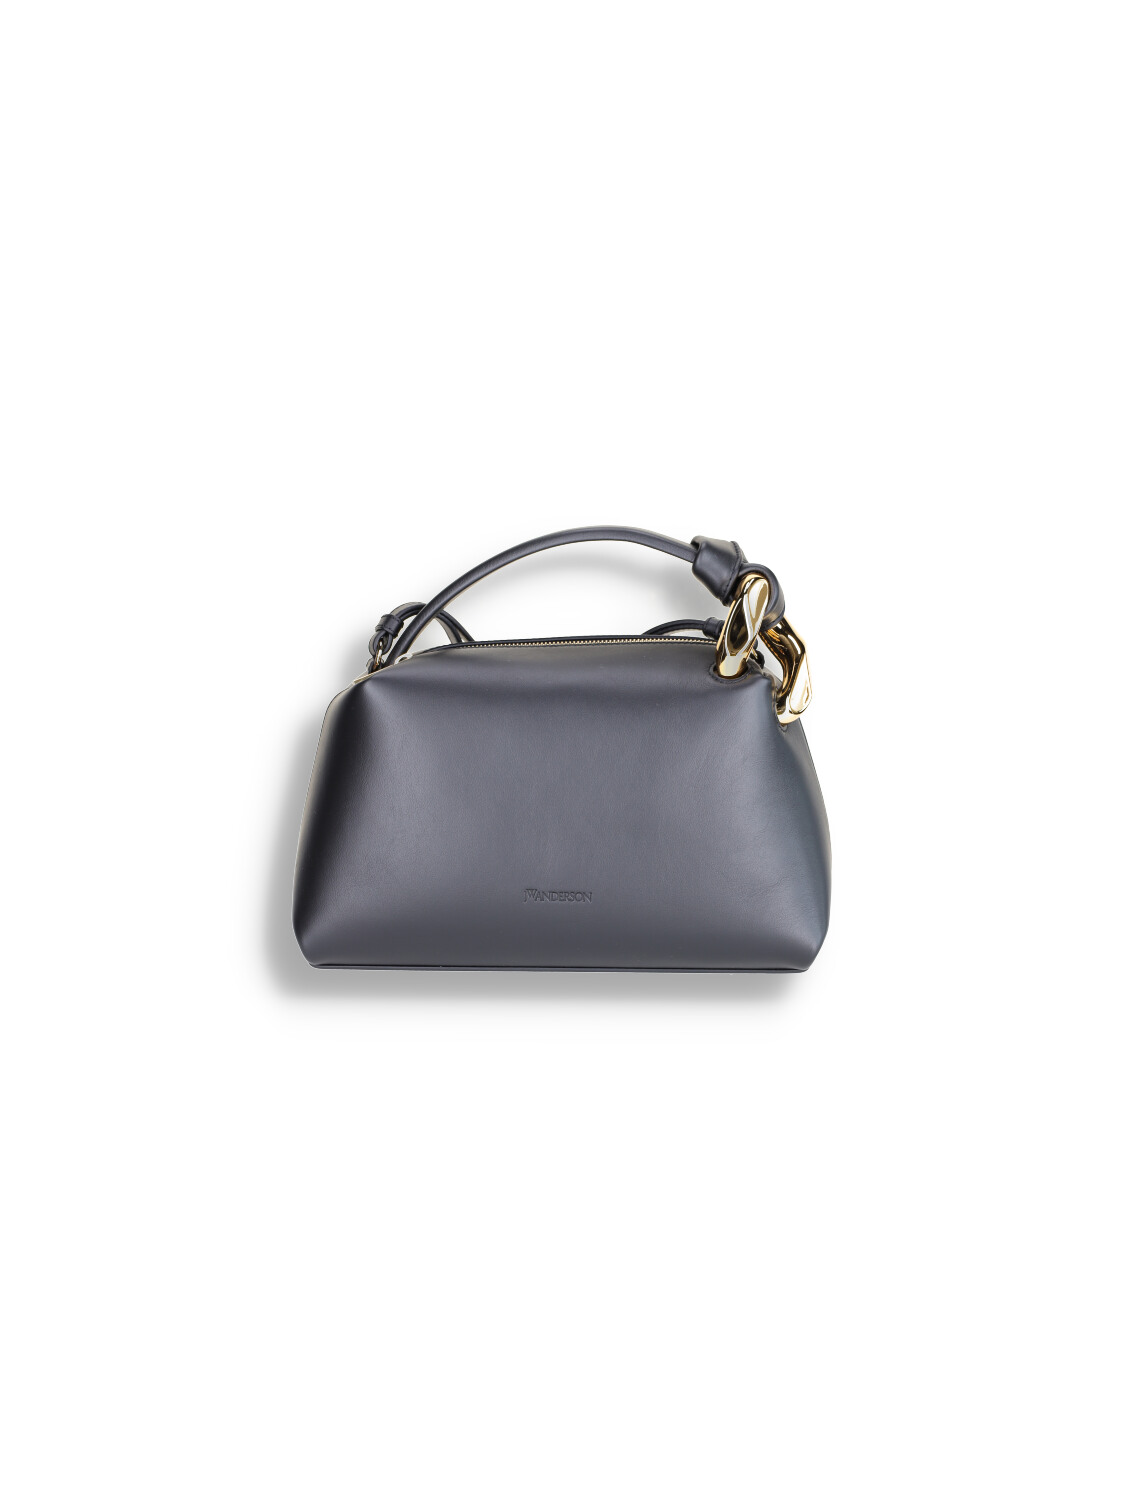 Corner Bag - Leather handbag with gold hardware